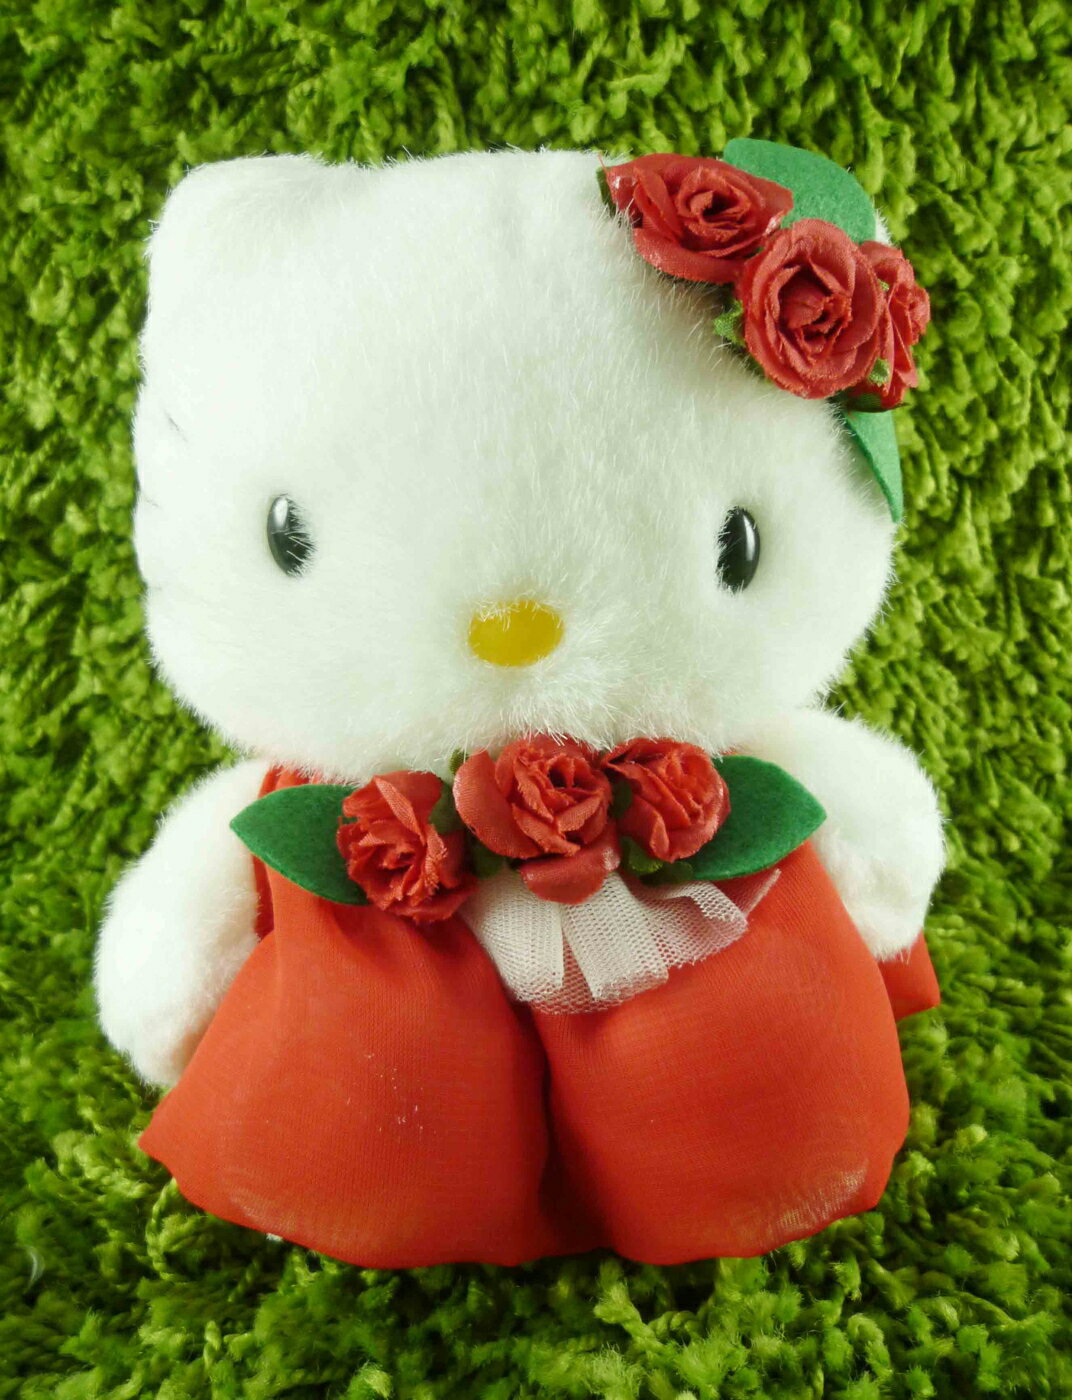 【震撼精品百貨】Hello Kitty 凱蒂貓 KITTY絨毛娃娃-葡萄牙服飾-紅色 震撼日式精品百貨